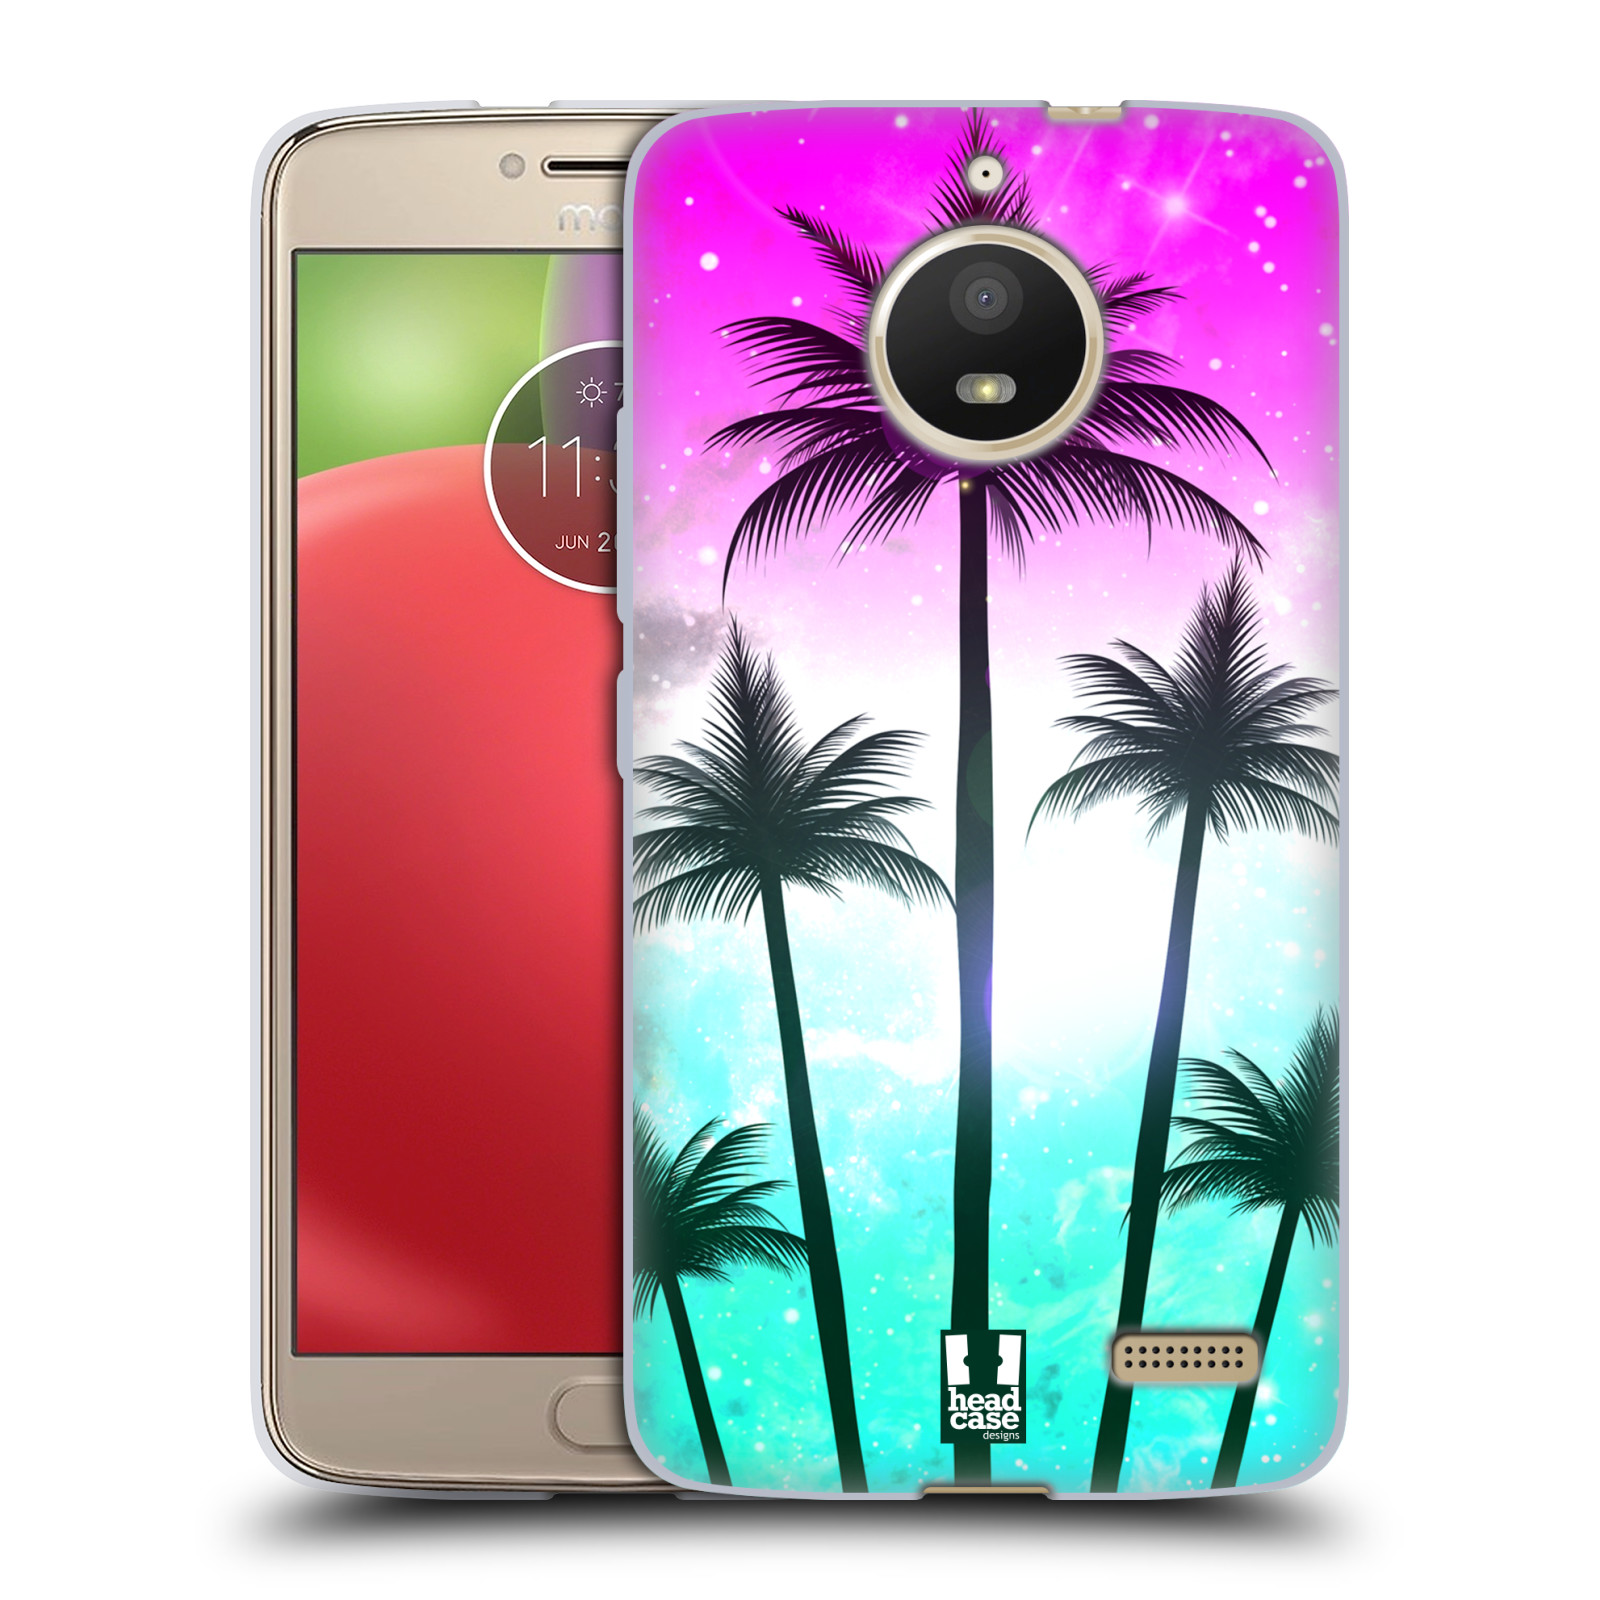 HEAD CASE silikonový obal na mobil Lenovo Moto E4 vzor Kreslený motiv silueta moře a palmy RŮŽOVÁ A TYRKYS